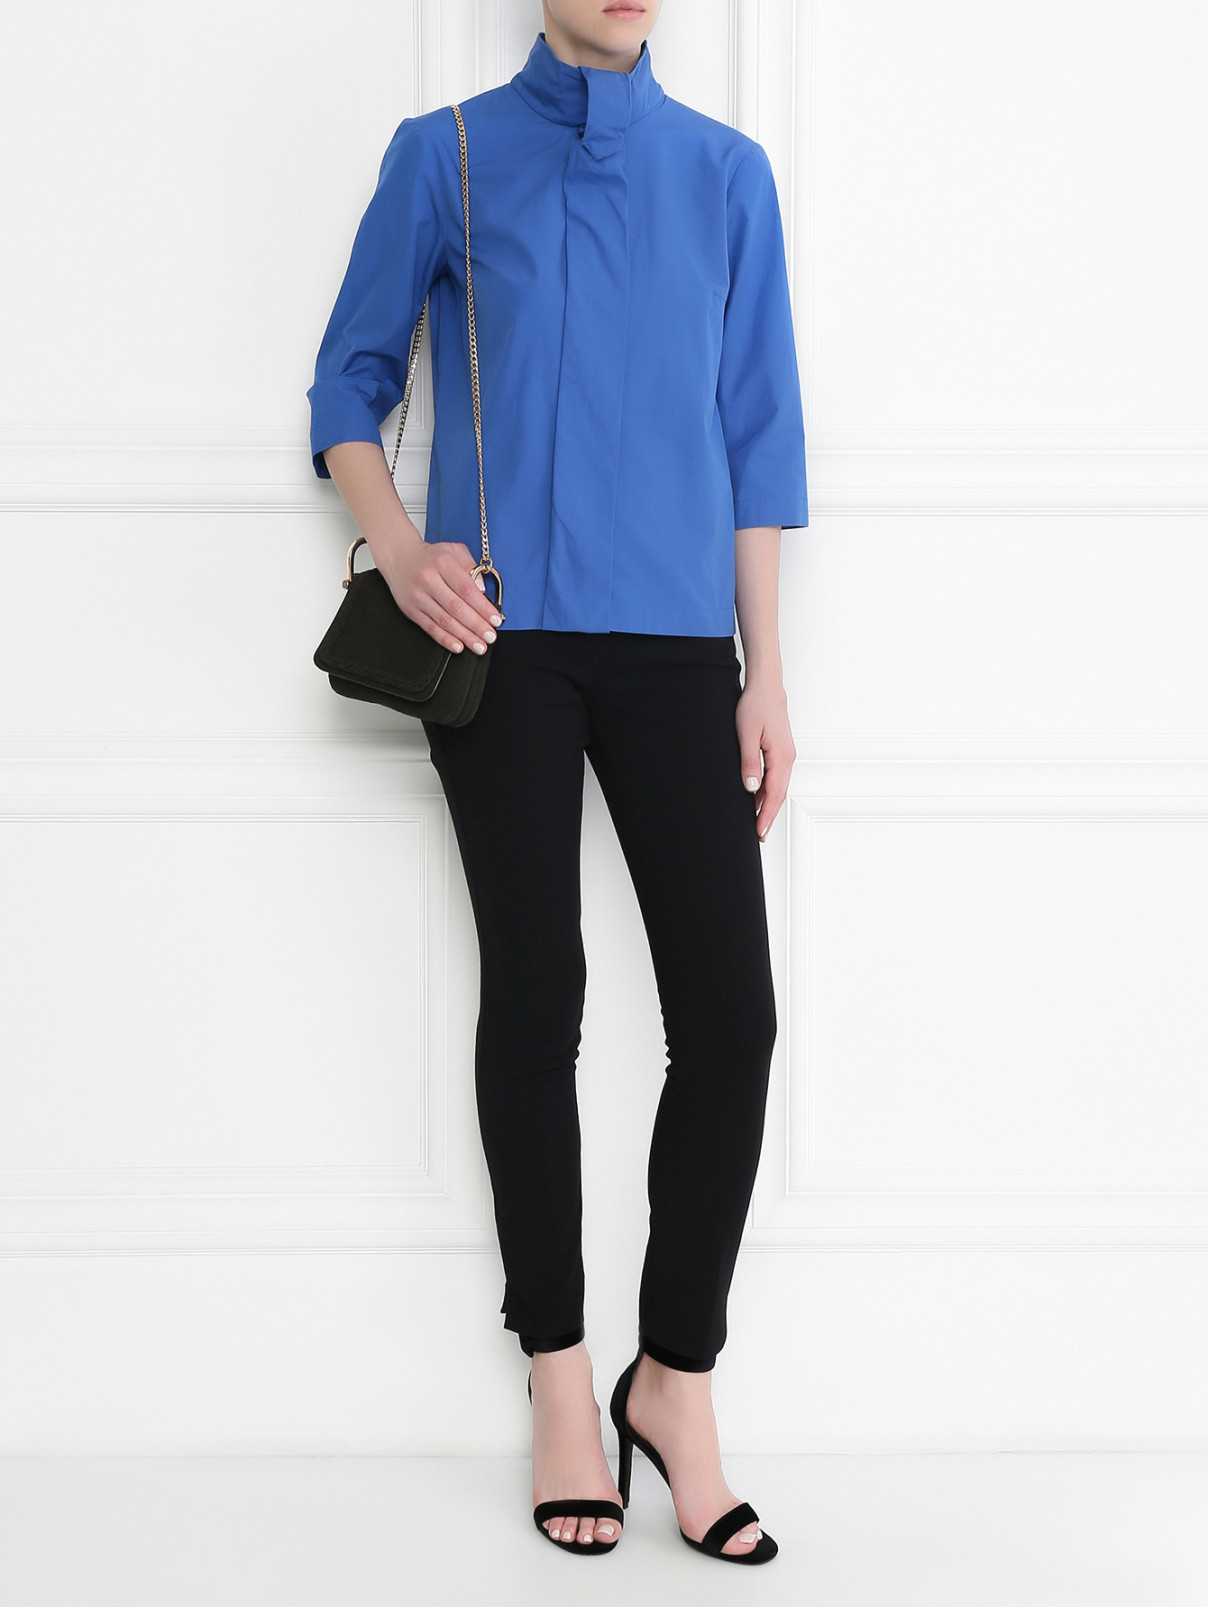 Блуза из хлопка с рукавами 3/4 Viktor&Rolf  –  Модель Общий вид  – Цвет:  Синий